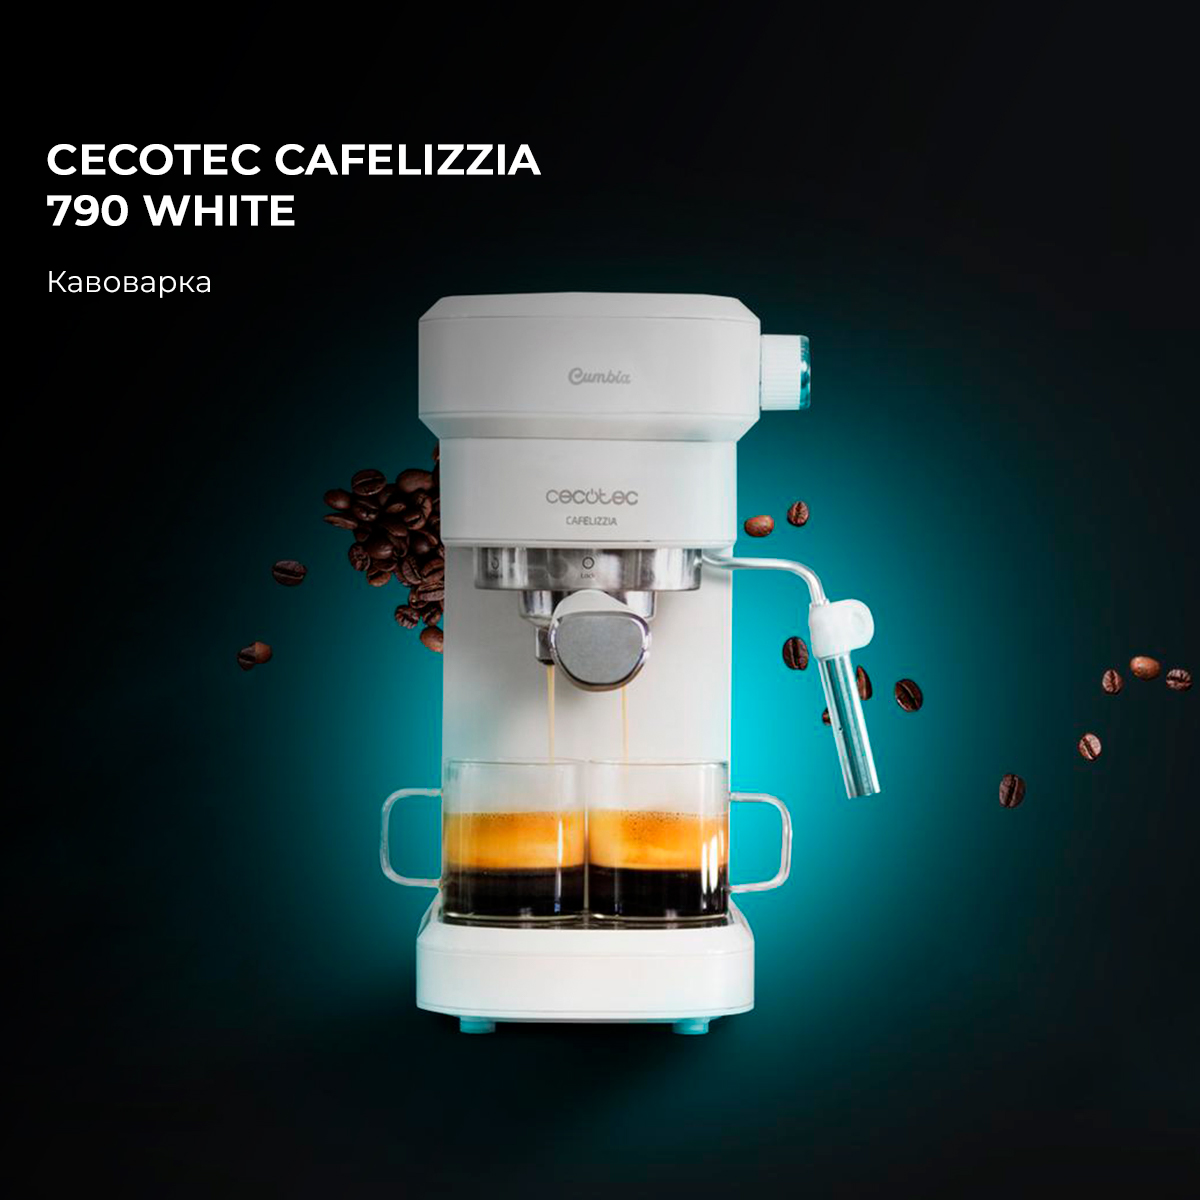 Cafetera Cecotec Cafelizzia 790 White 1350w (01650)